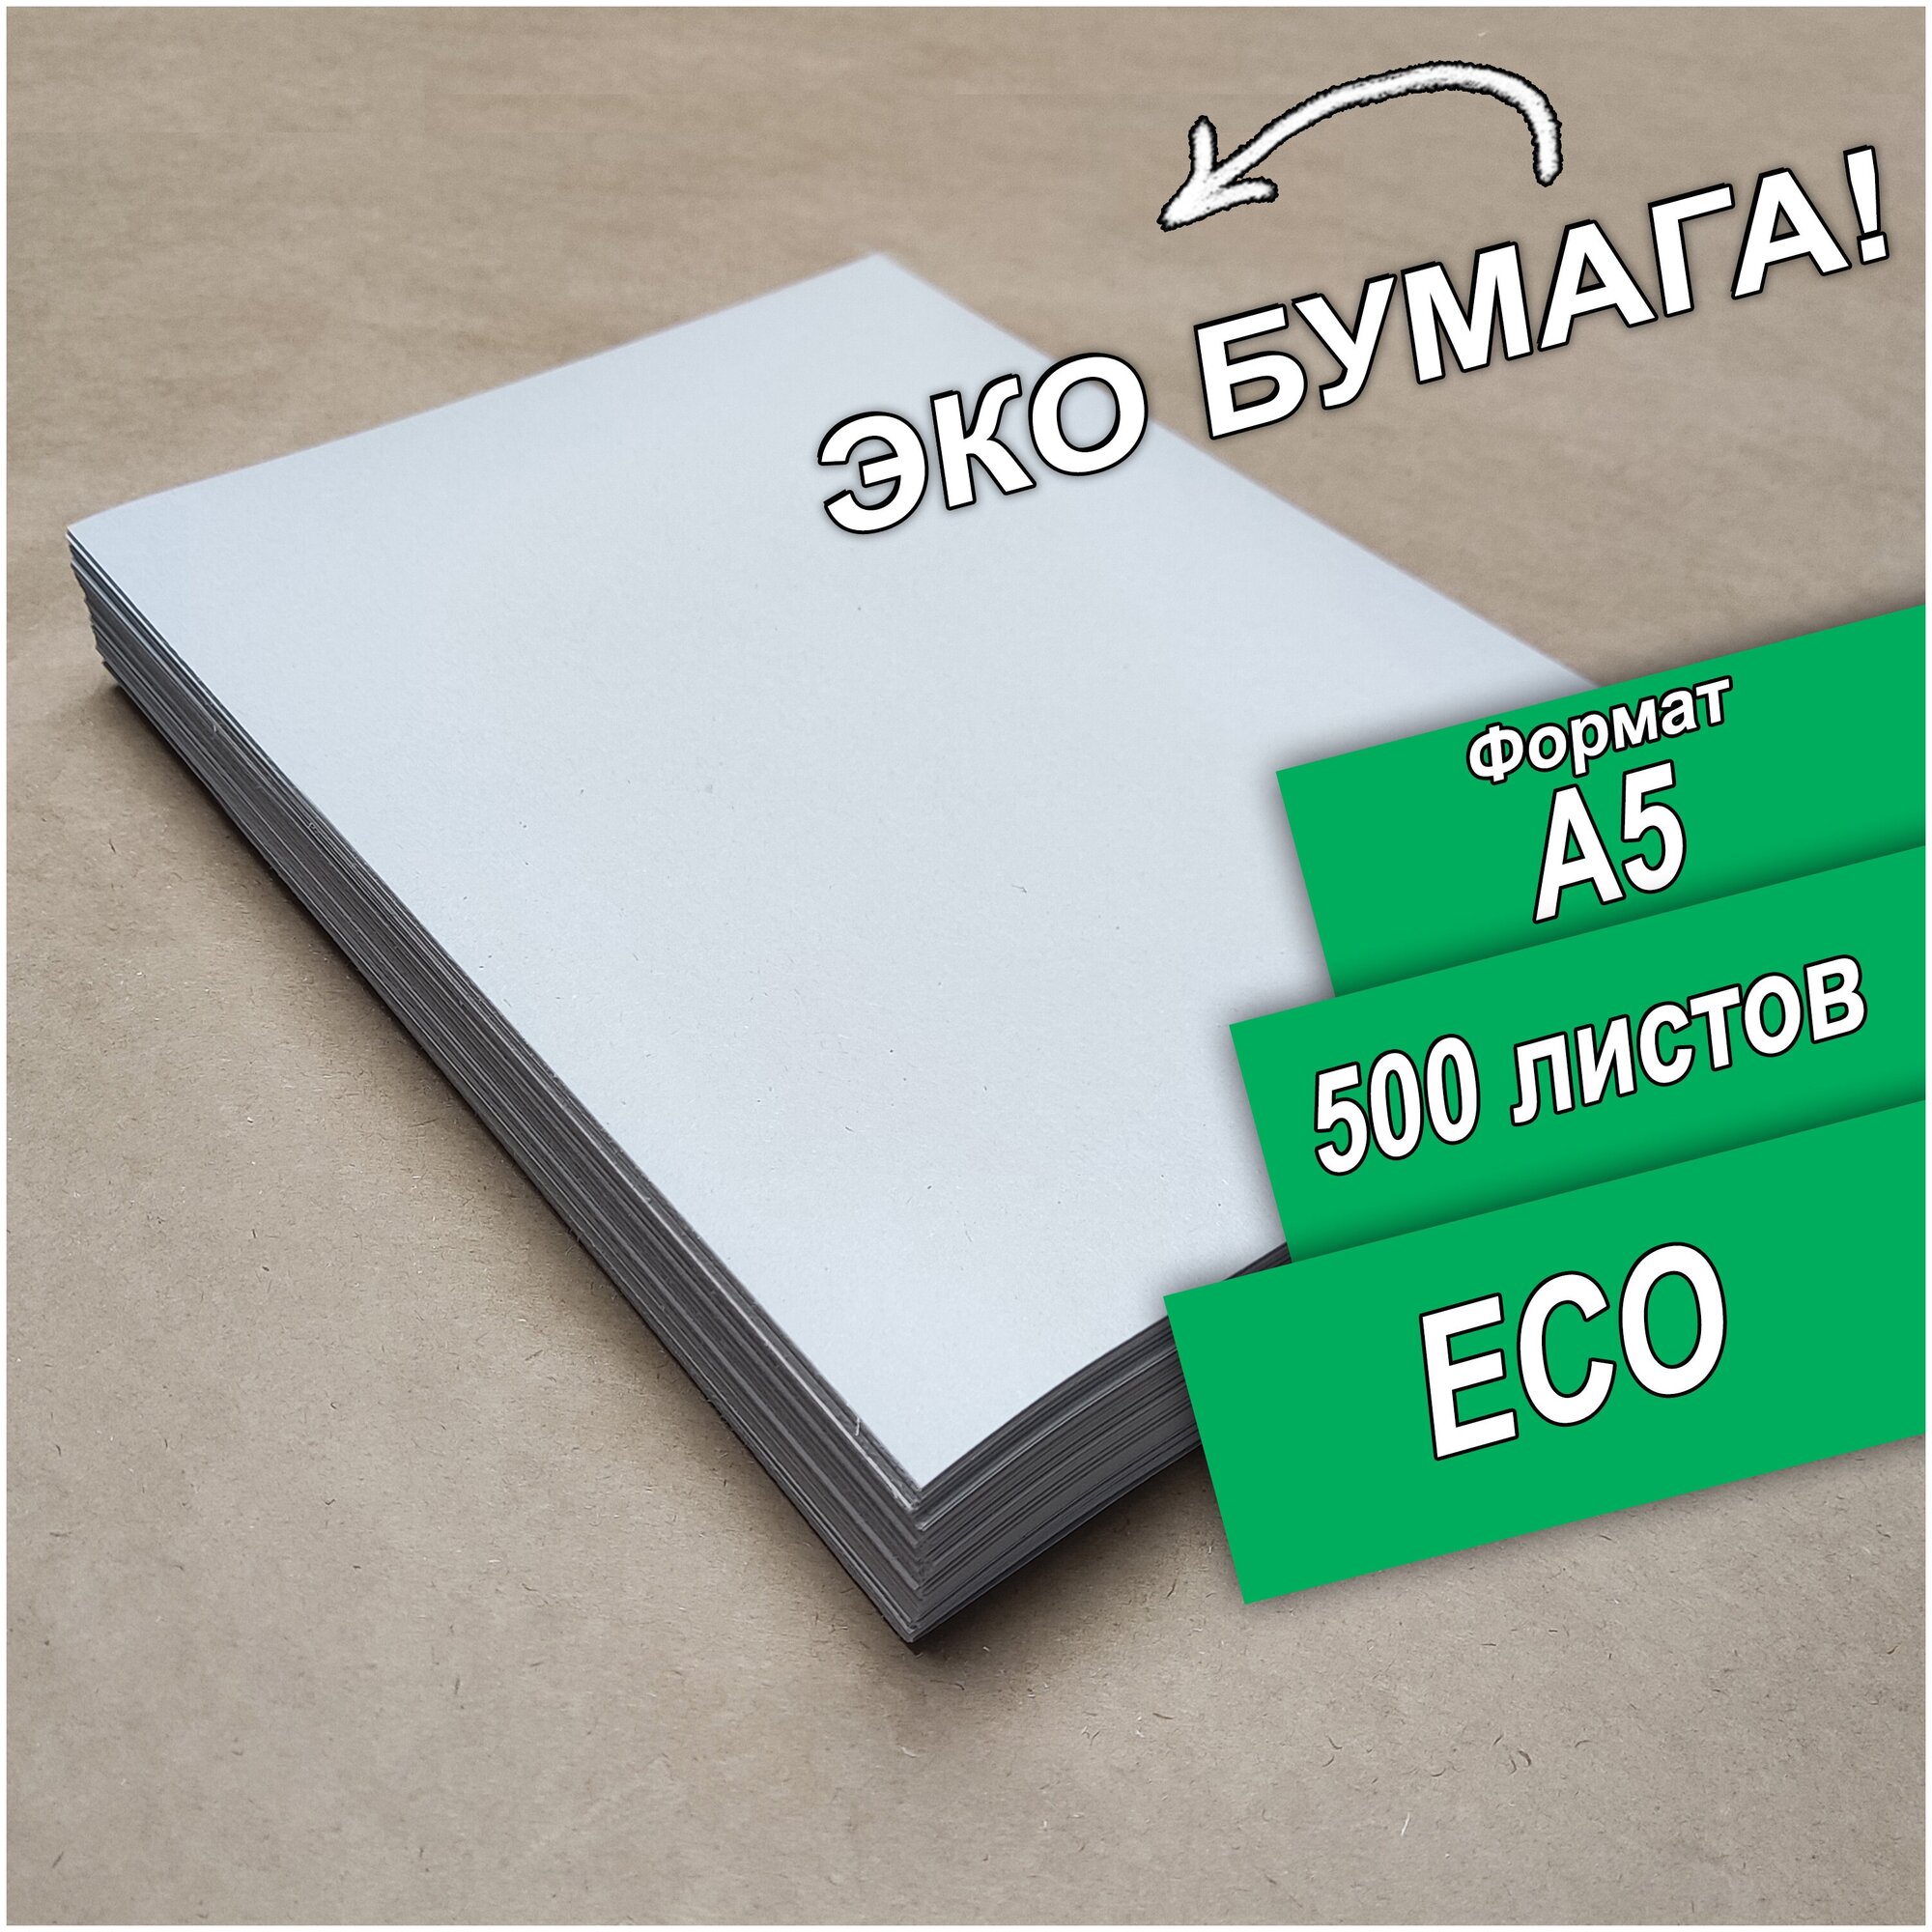 Бумага для оргтехники 70 граммов ECO / Бумага ЭКО 500 листов А5, с ндс